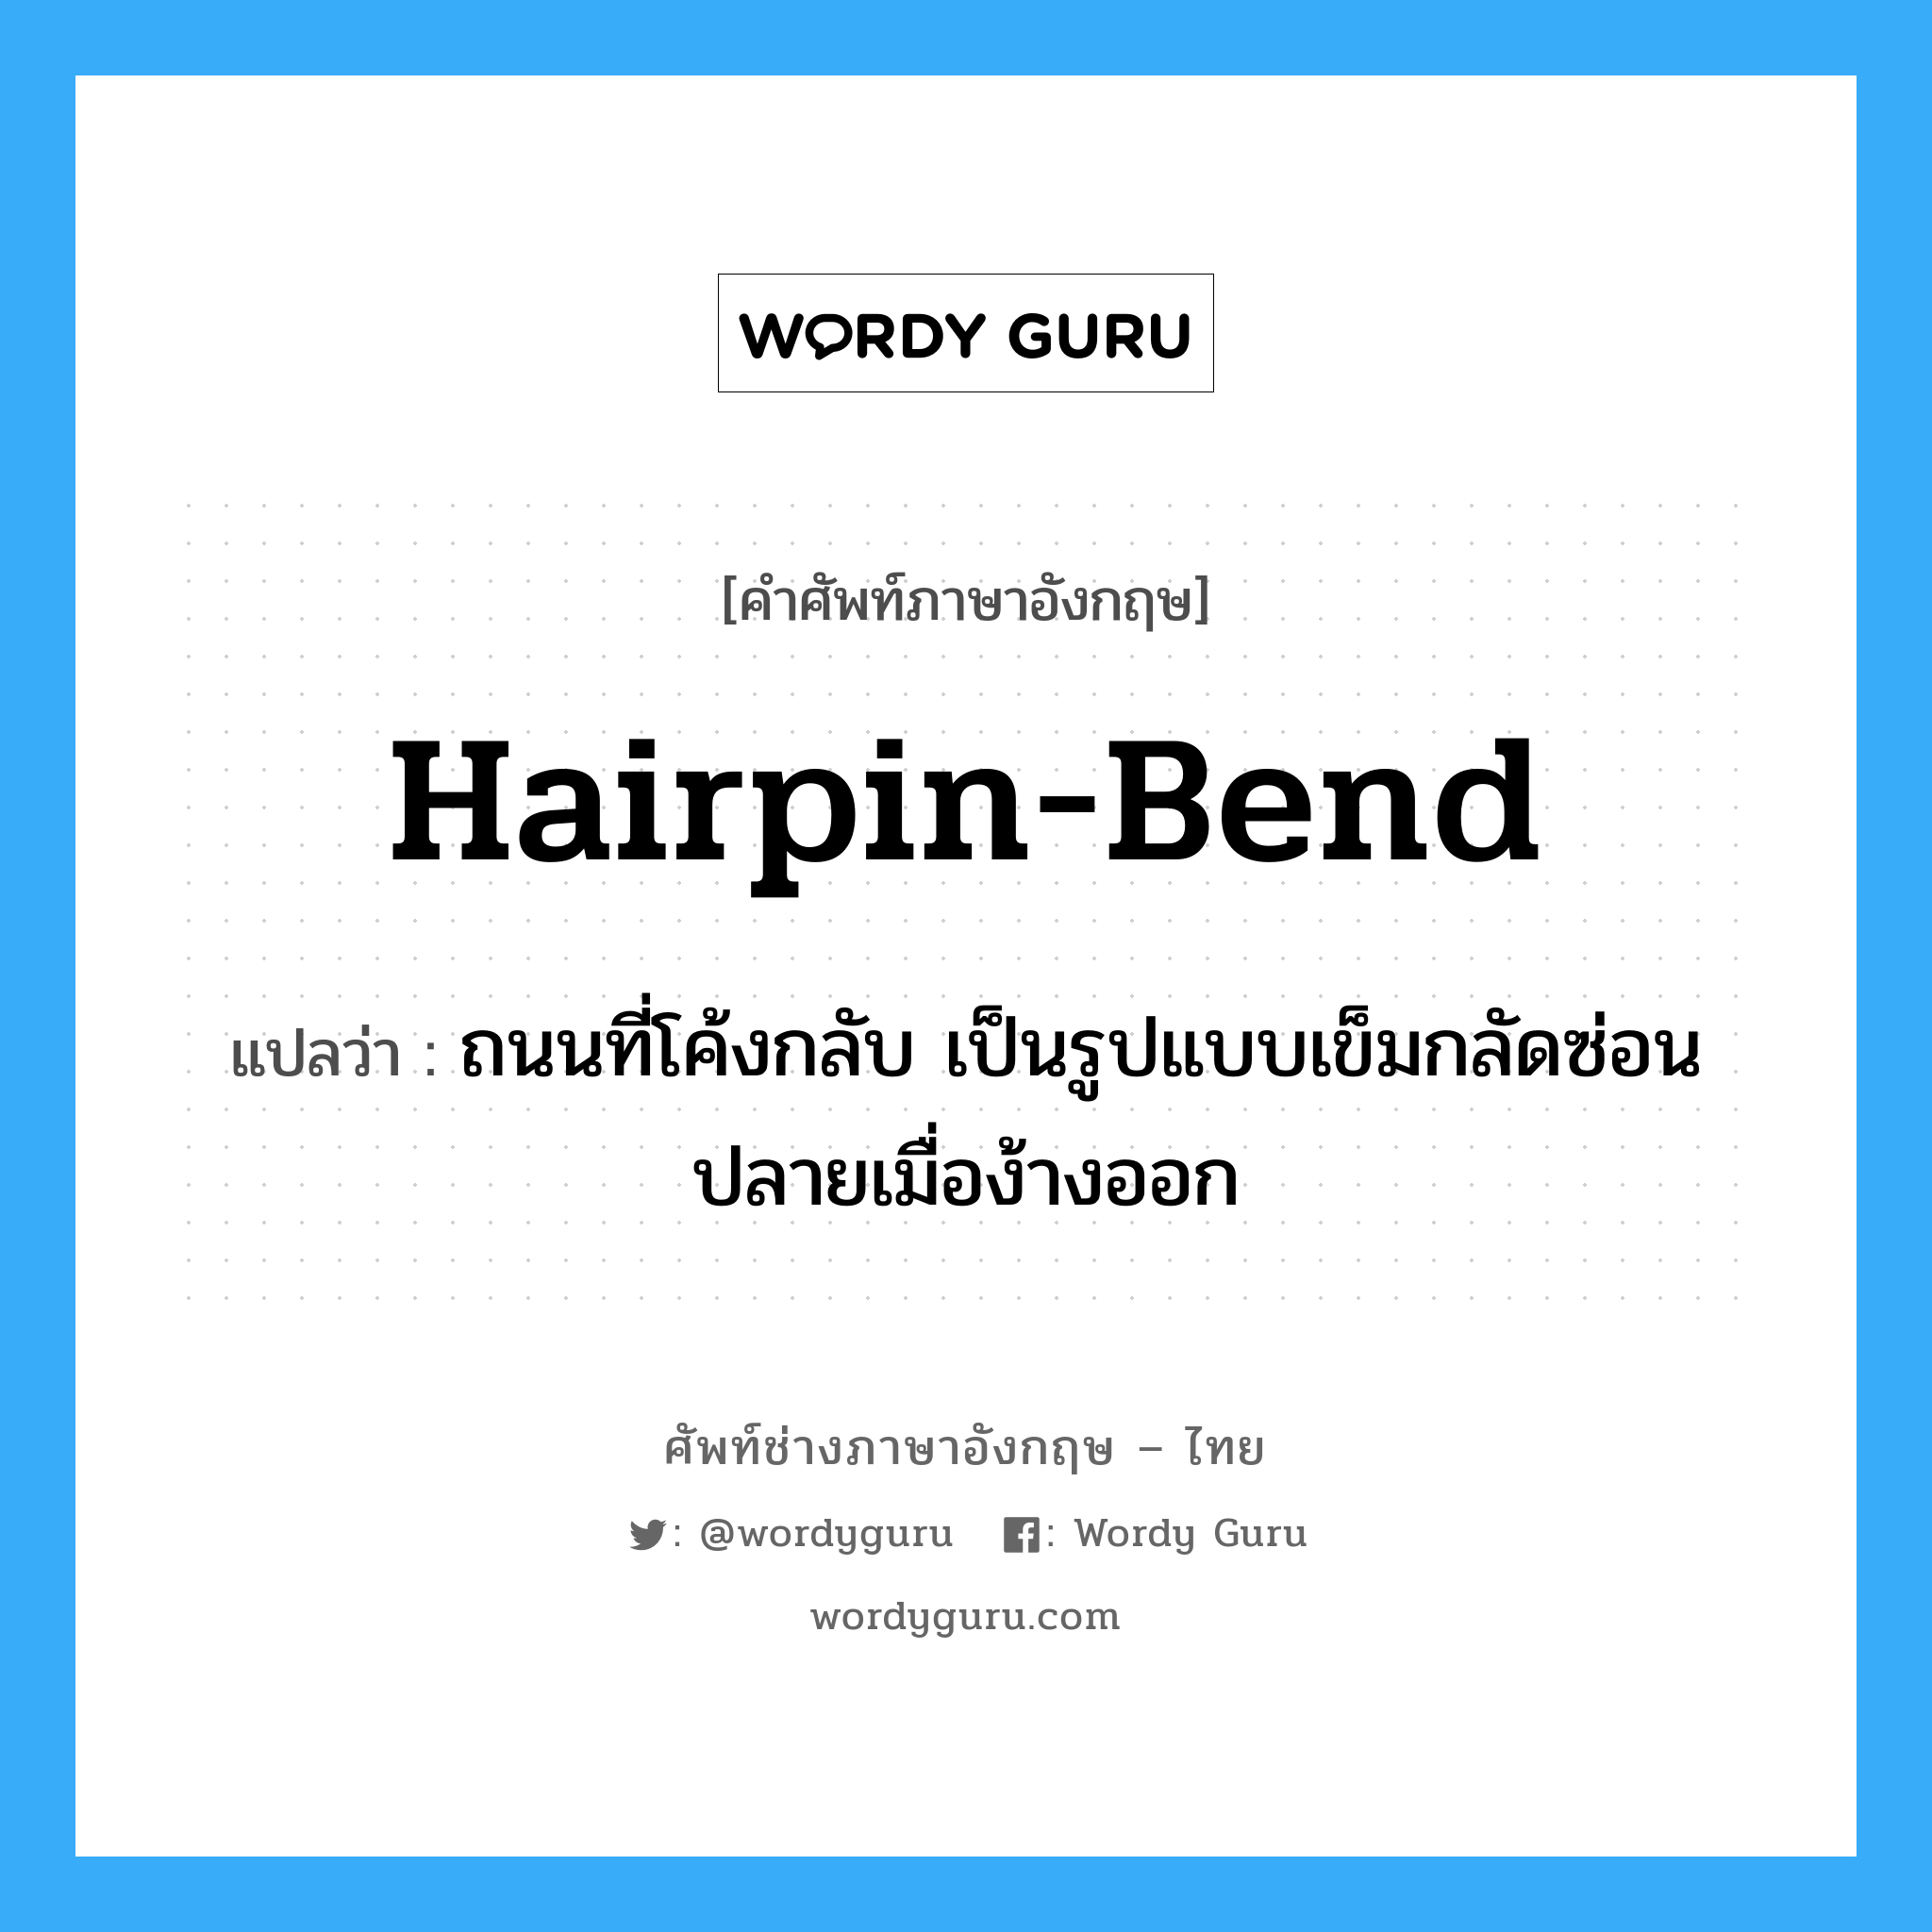 hairpin-bend แปลว่า?, คำศัพท์ช่างภาษาอังกฤษ - ไทย hairpin-bend คำศัพท์ภาษาอังกฤษ hairpin-bend แปลว่า ถนนที่โค้งกลับ เป็นรูปแบบเข็มกลัดซ่อนปลายเมื่อง้างออก